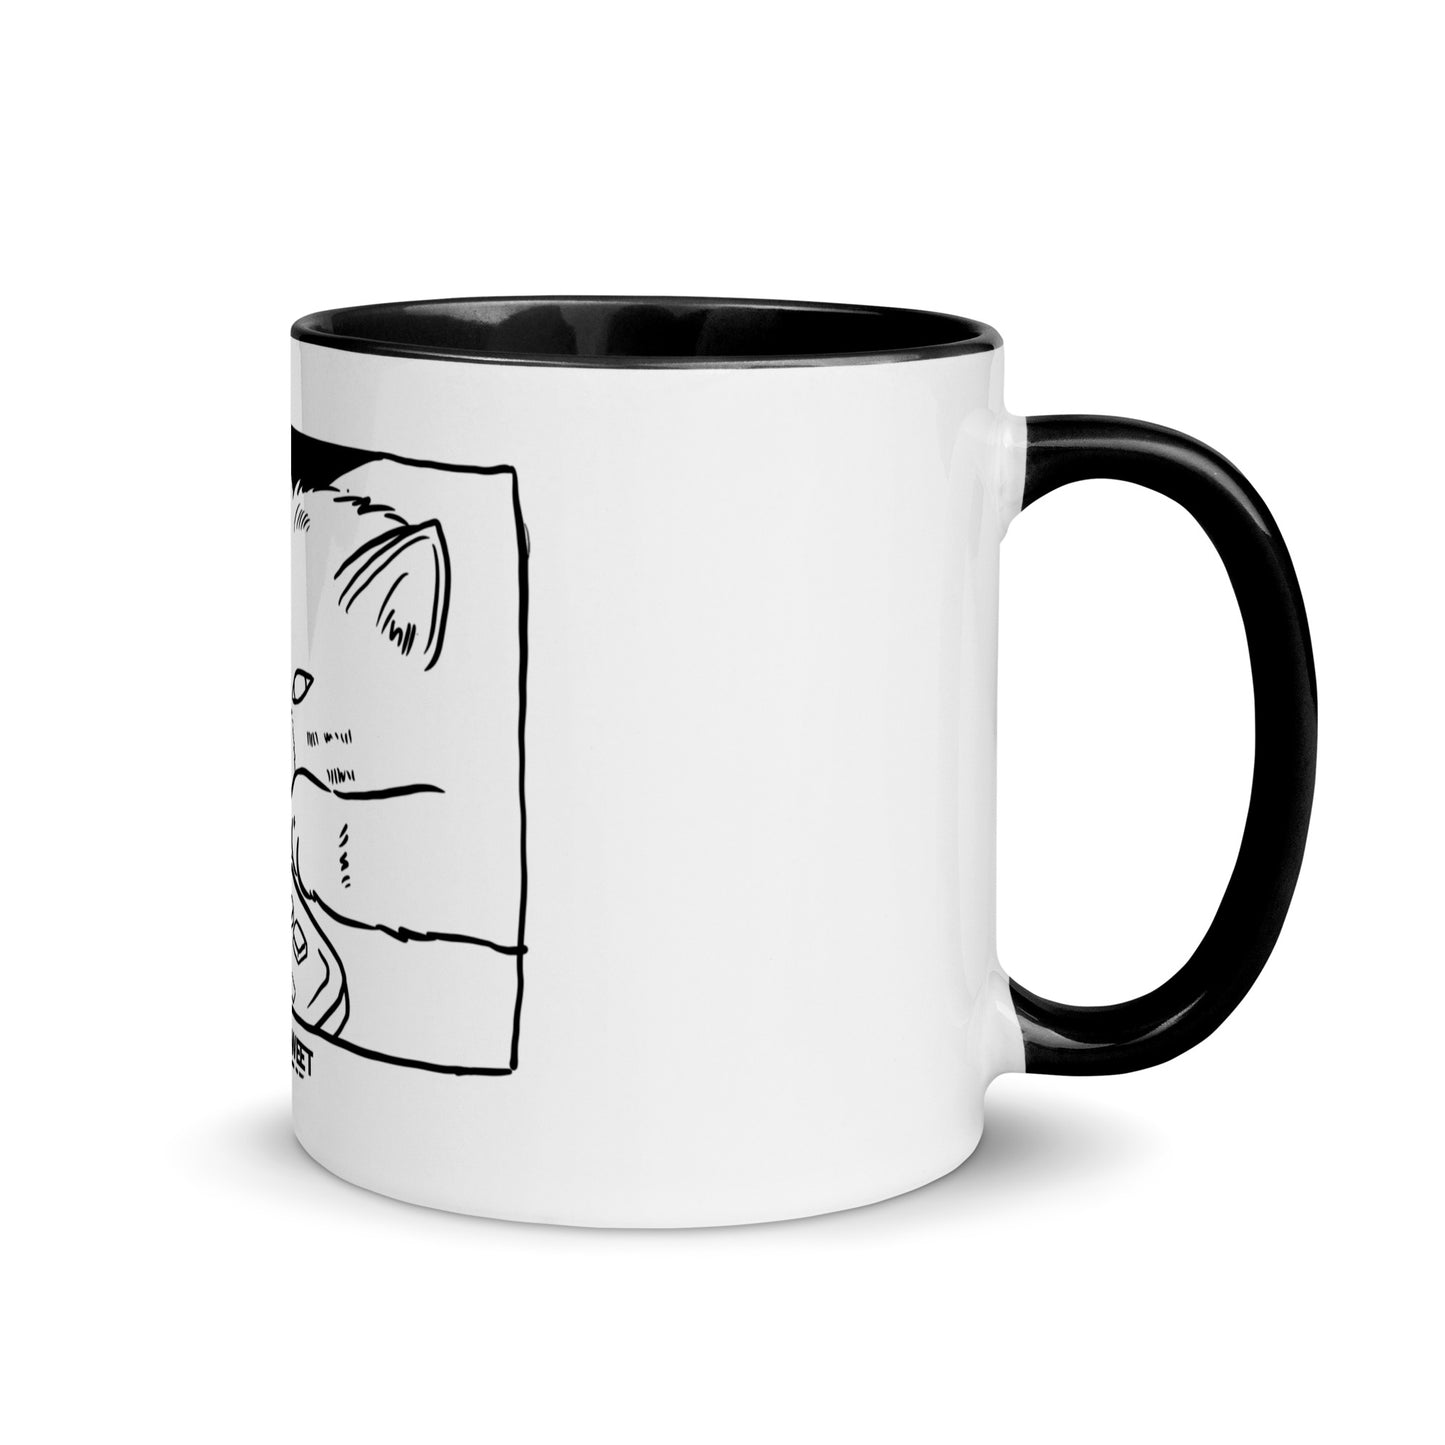 Hate Mondays - Coffee mugs, cat mugs